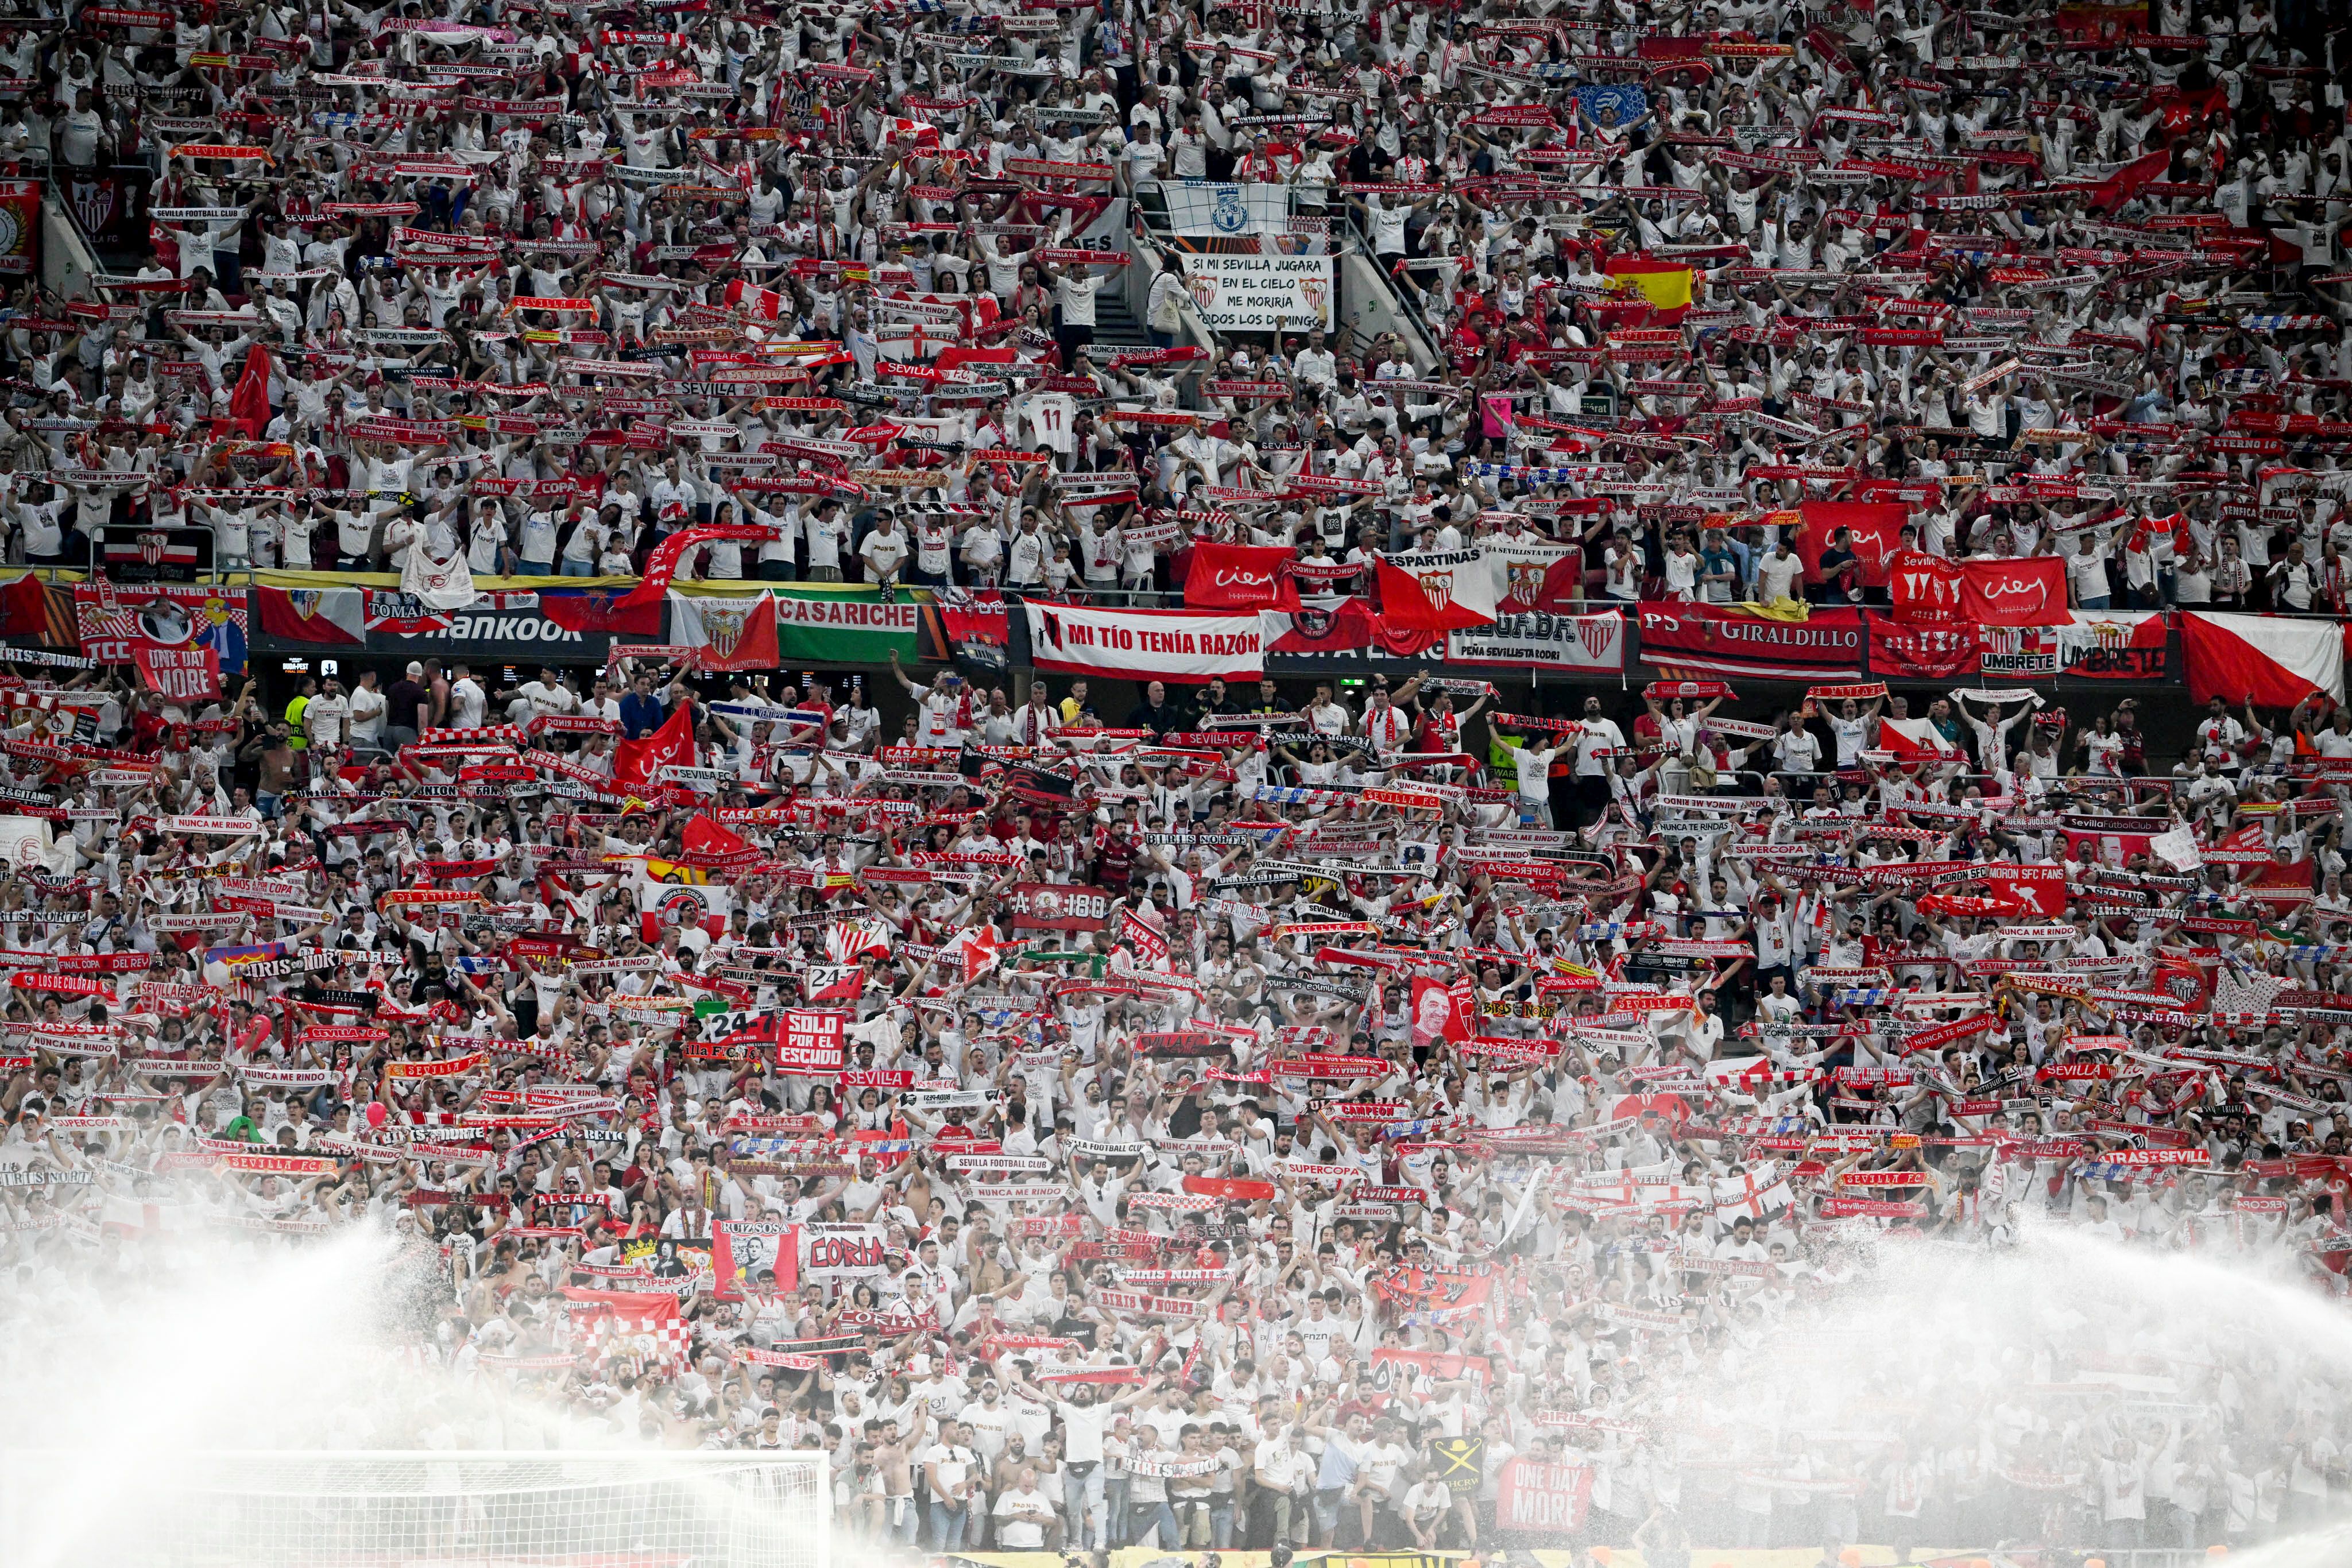 Detenido por estafar 13.500 euros a aficionados del Sevilla con entradas falsas de la Europa League foto imagen